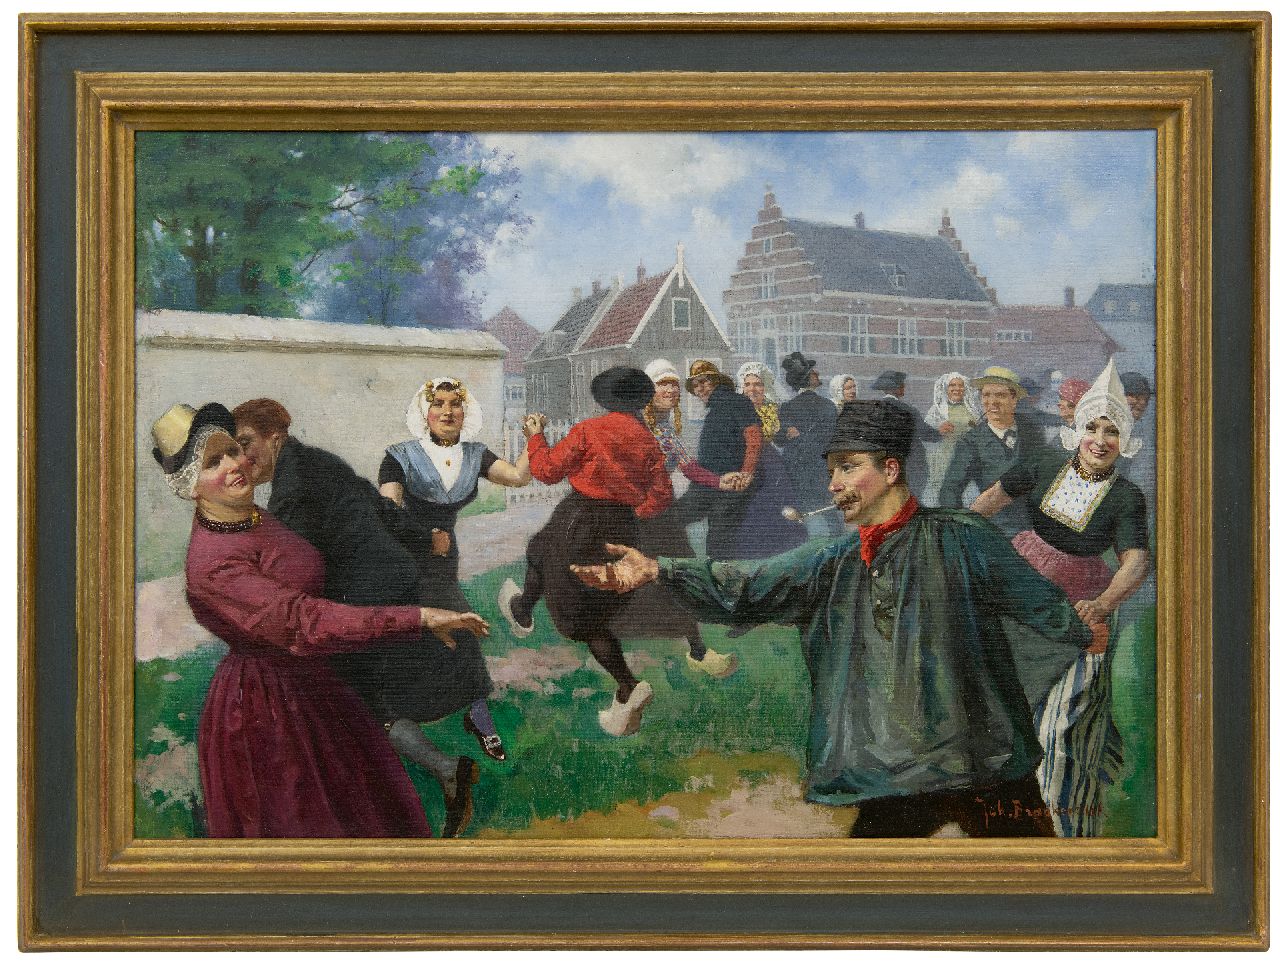 Braakensiek J.C.  | 'Johan' Coenraad Braakensiek | Paintings offered for sale | The dance of traditional costumes, oil on canvas 46.2 x 64.6 cm, signed l.r.